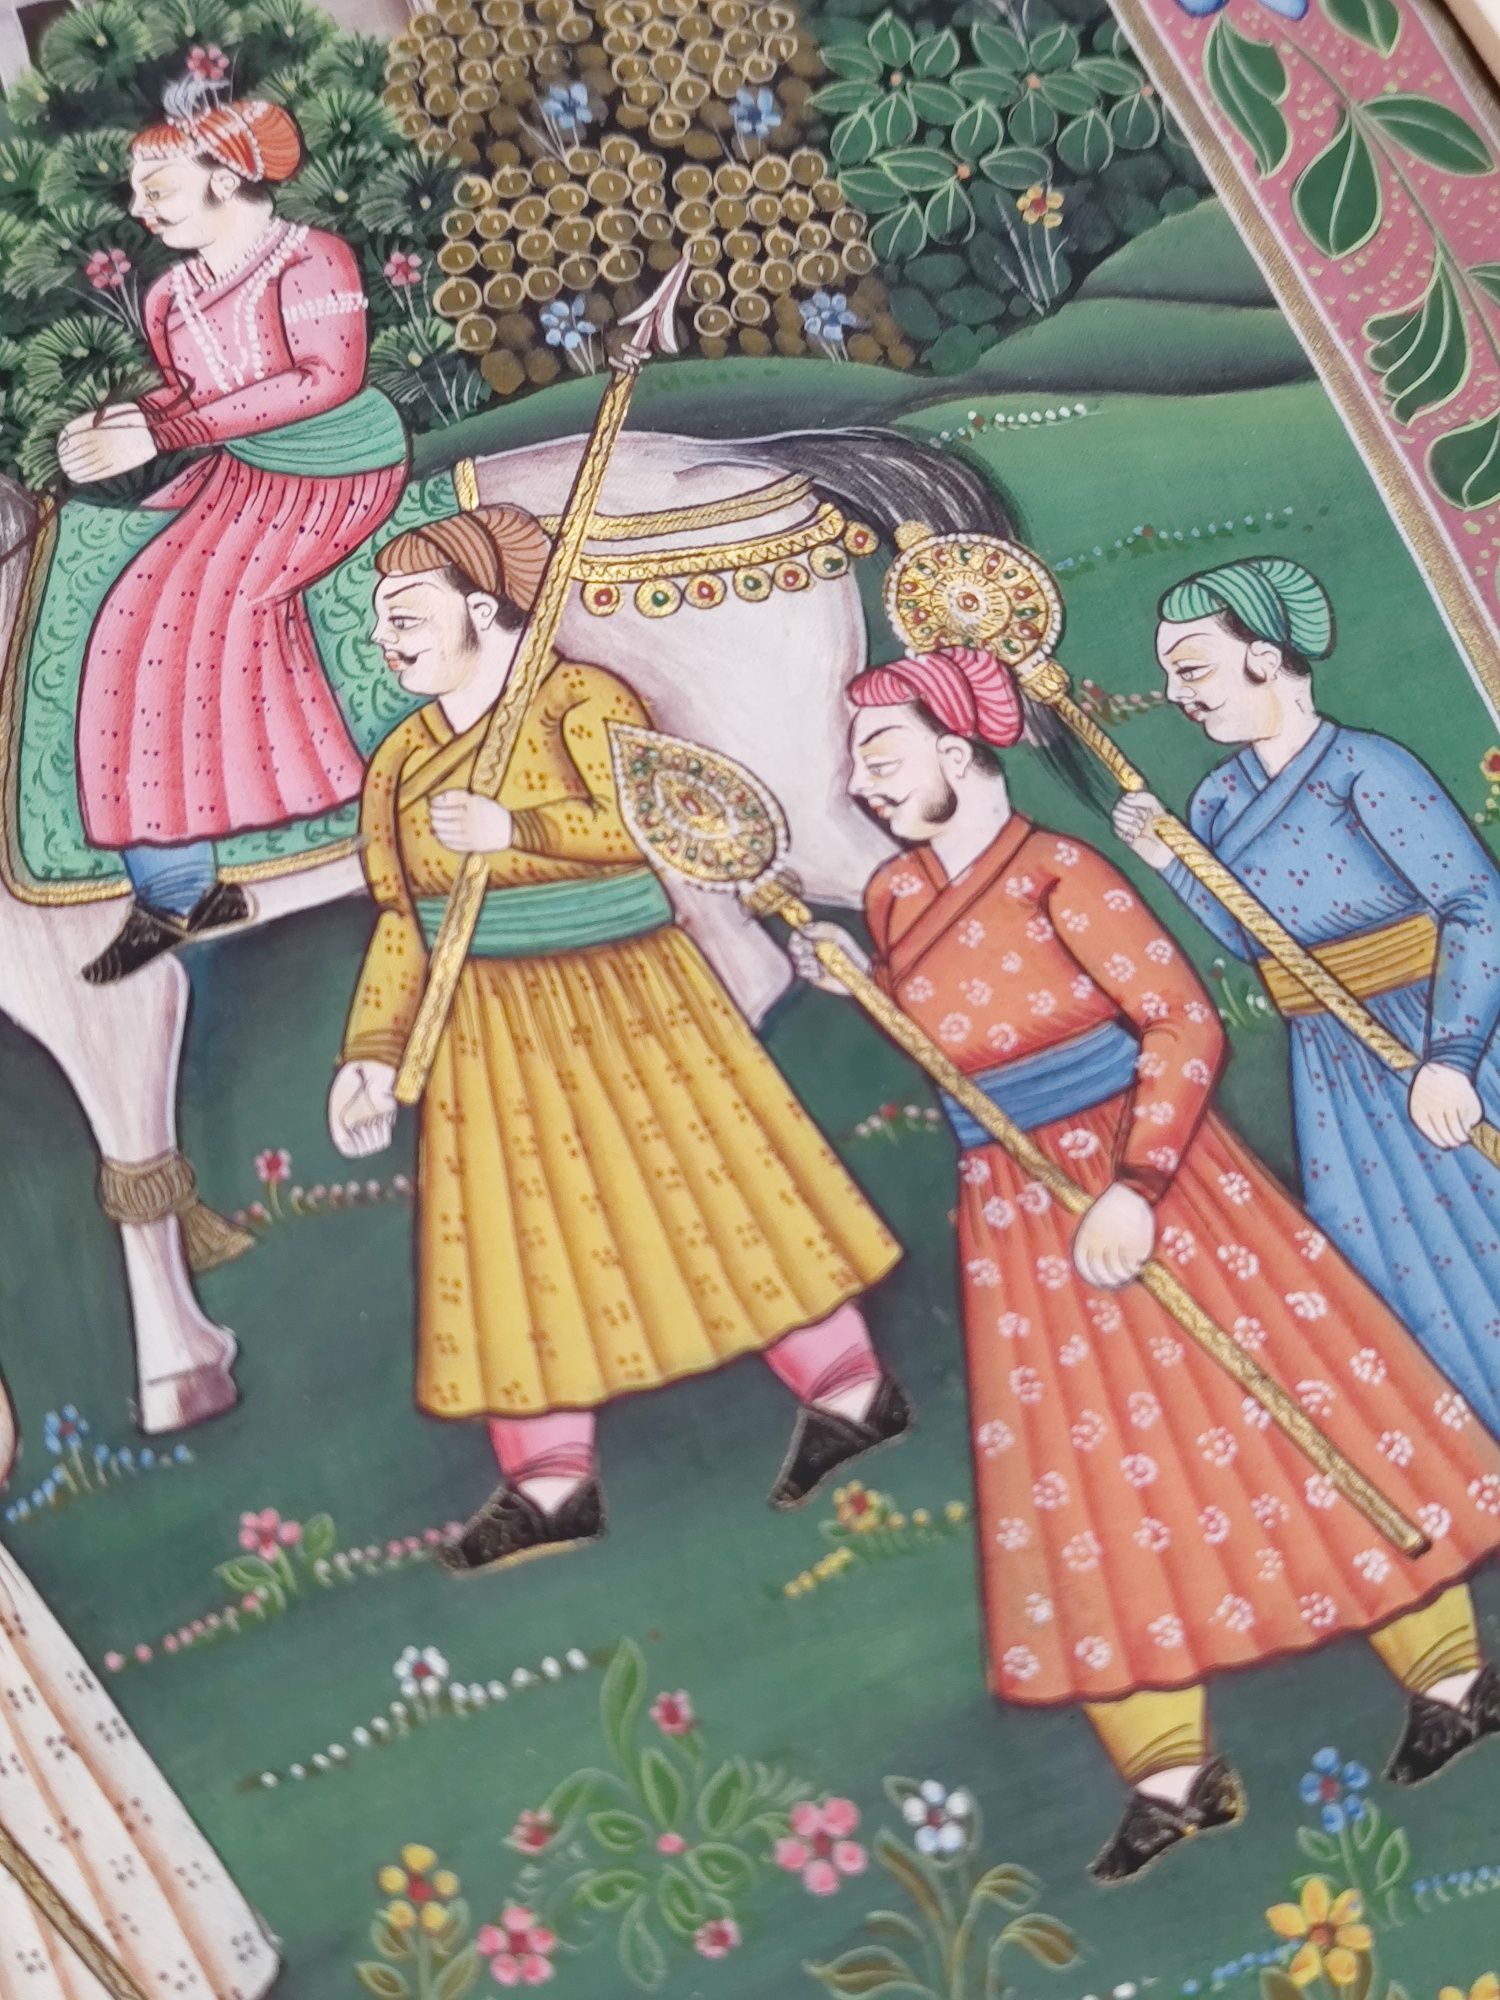 Picturi indo-persane pe panza